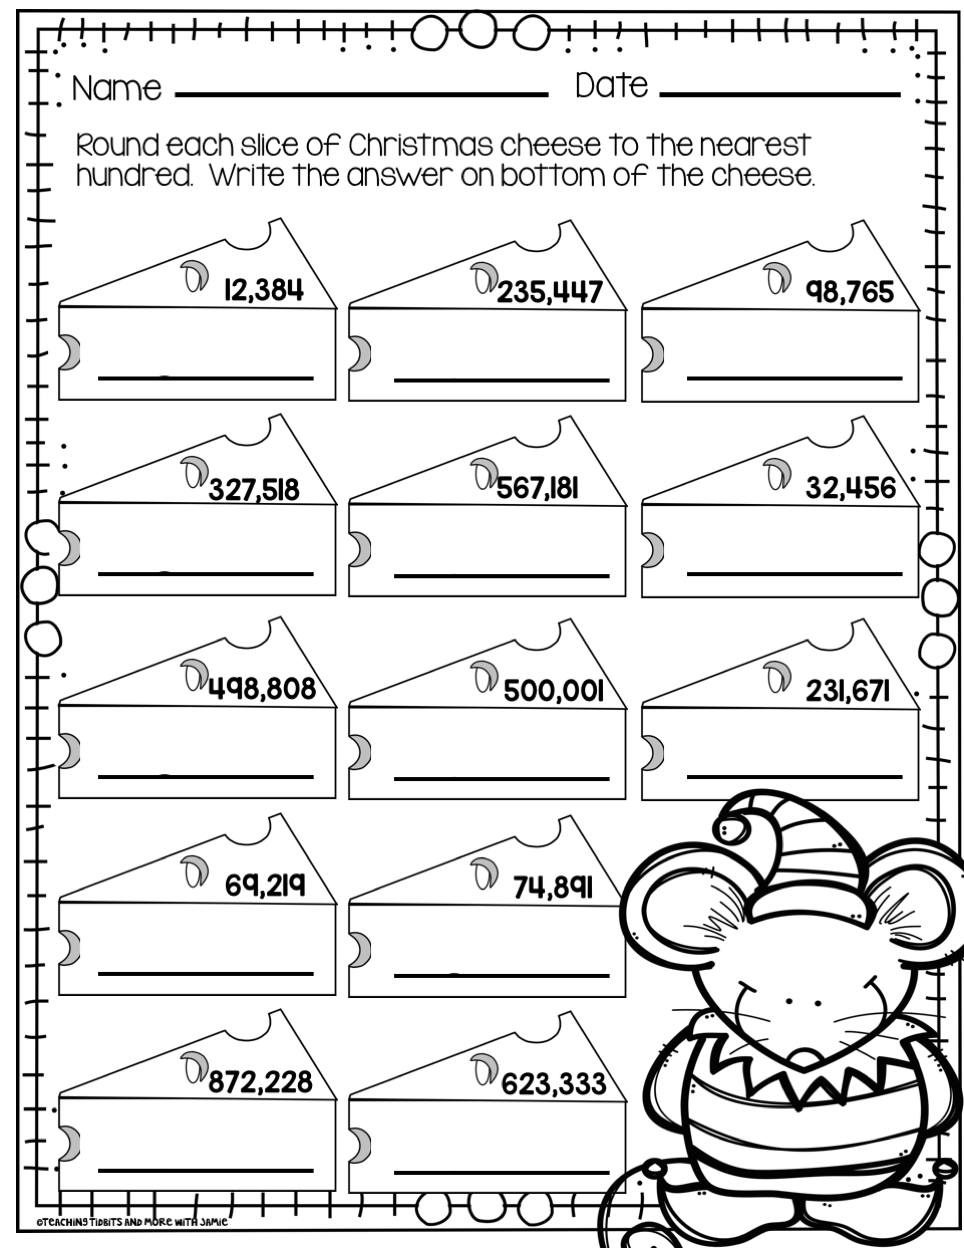 fun-math-worksheets-for-5th-grade-worksheets-for-kindergarten